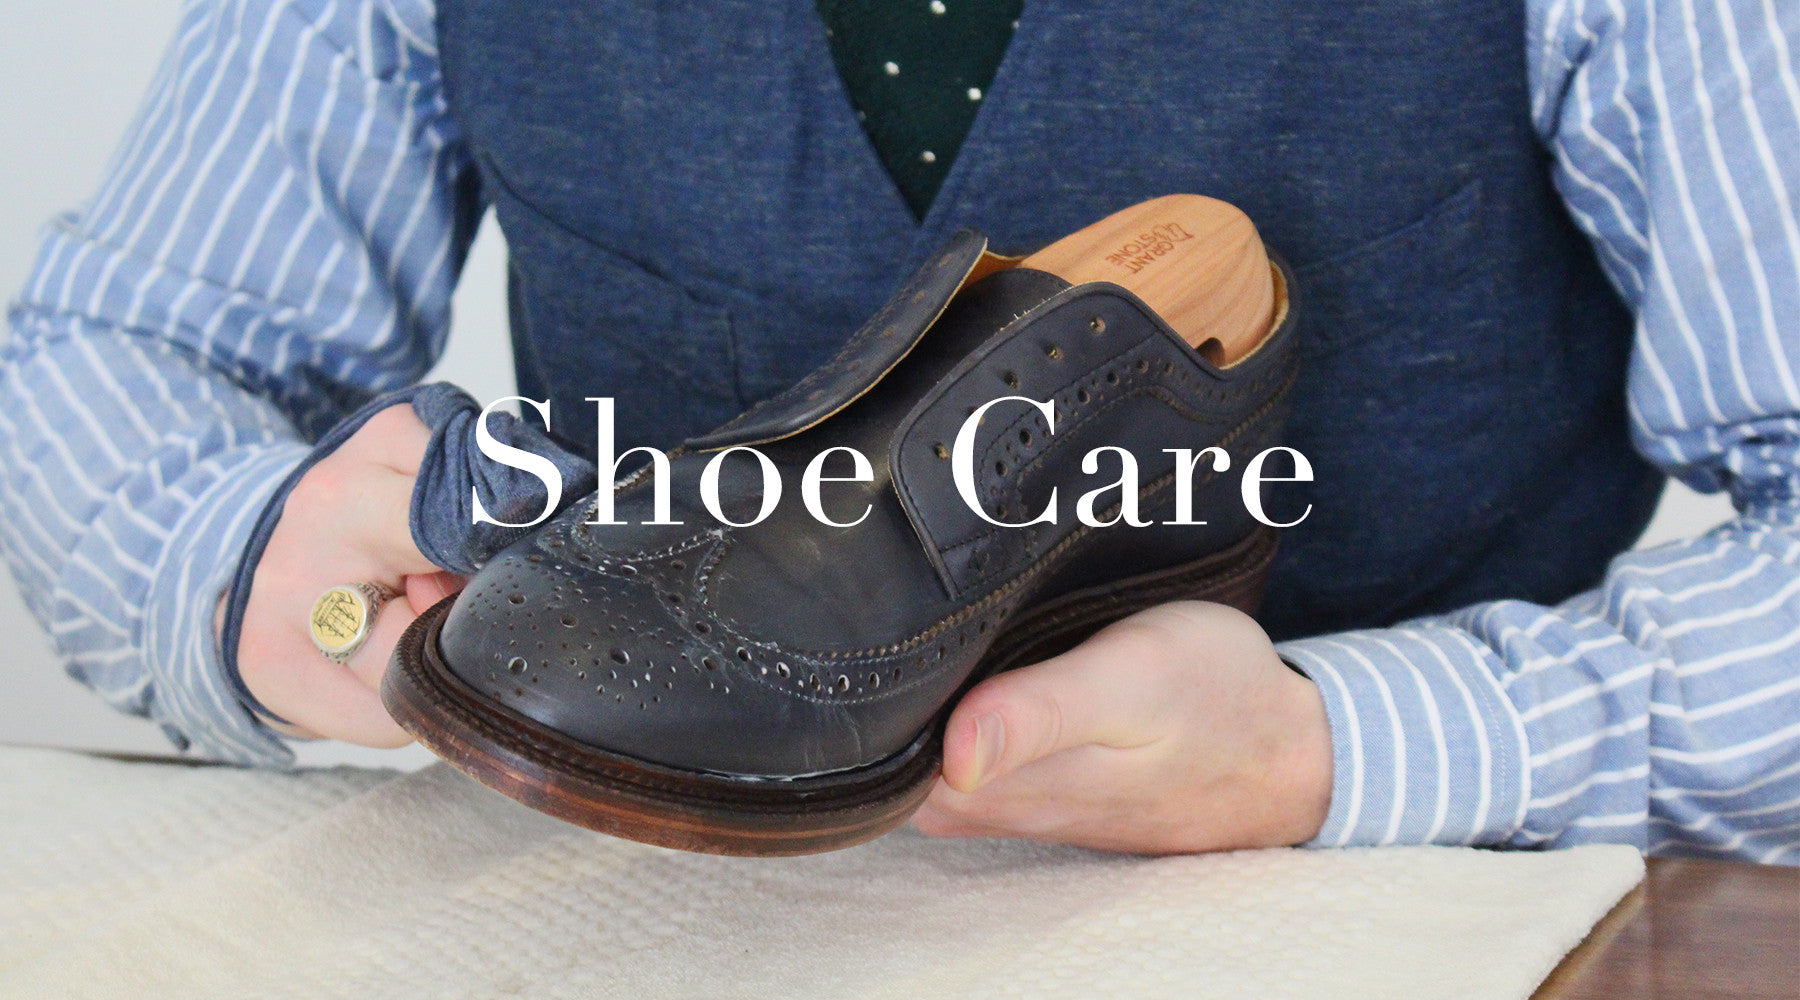 Shoe Care – Grant Stone